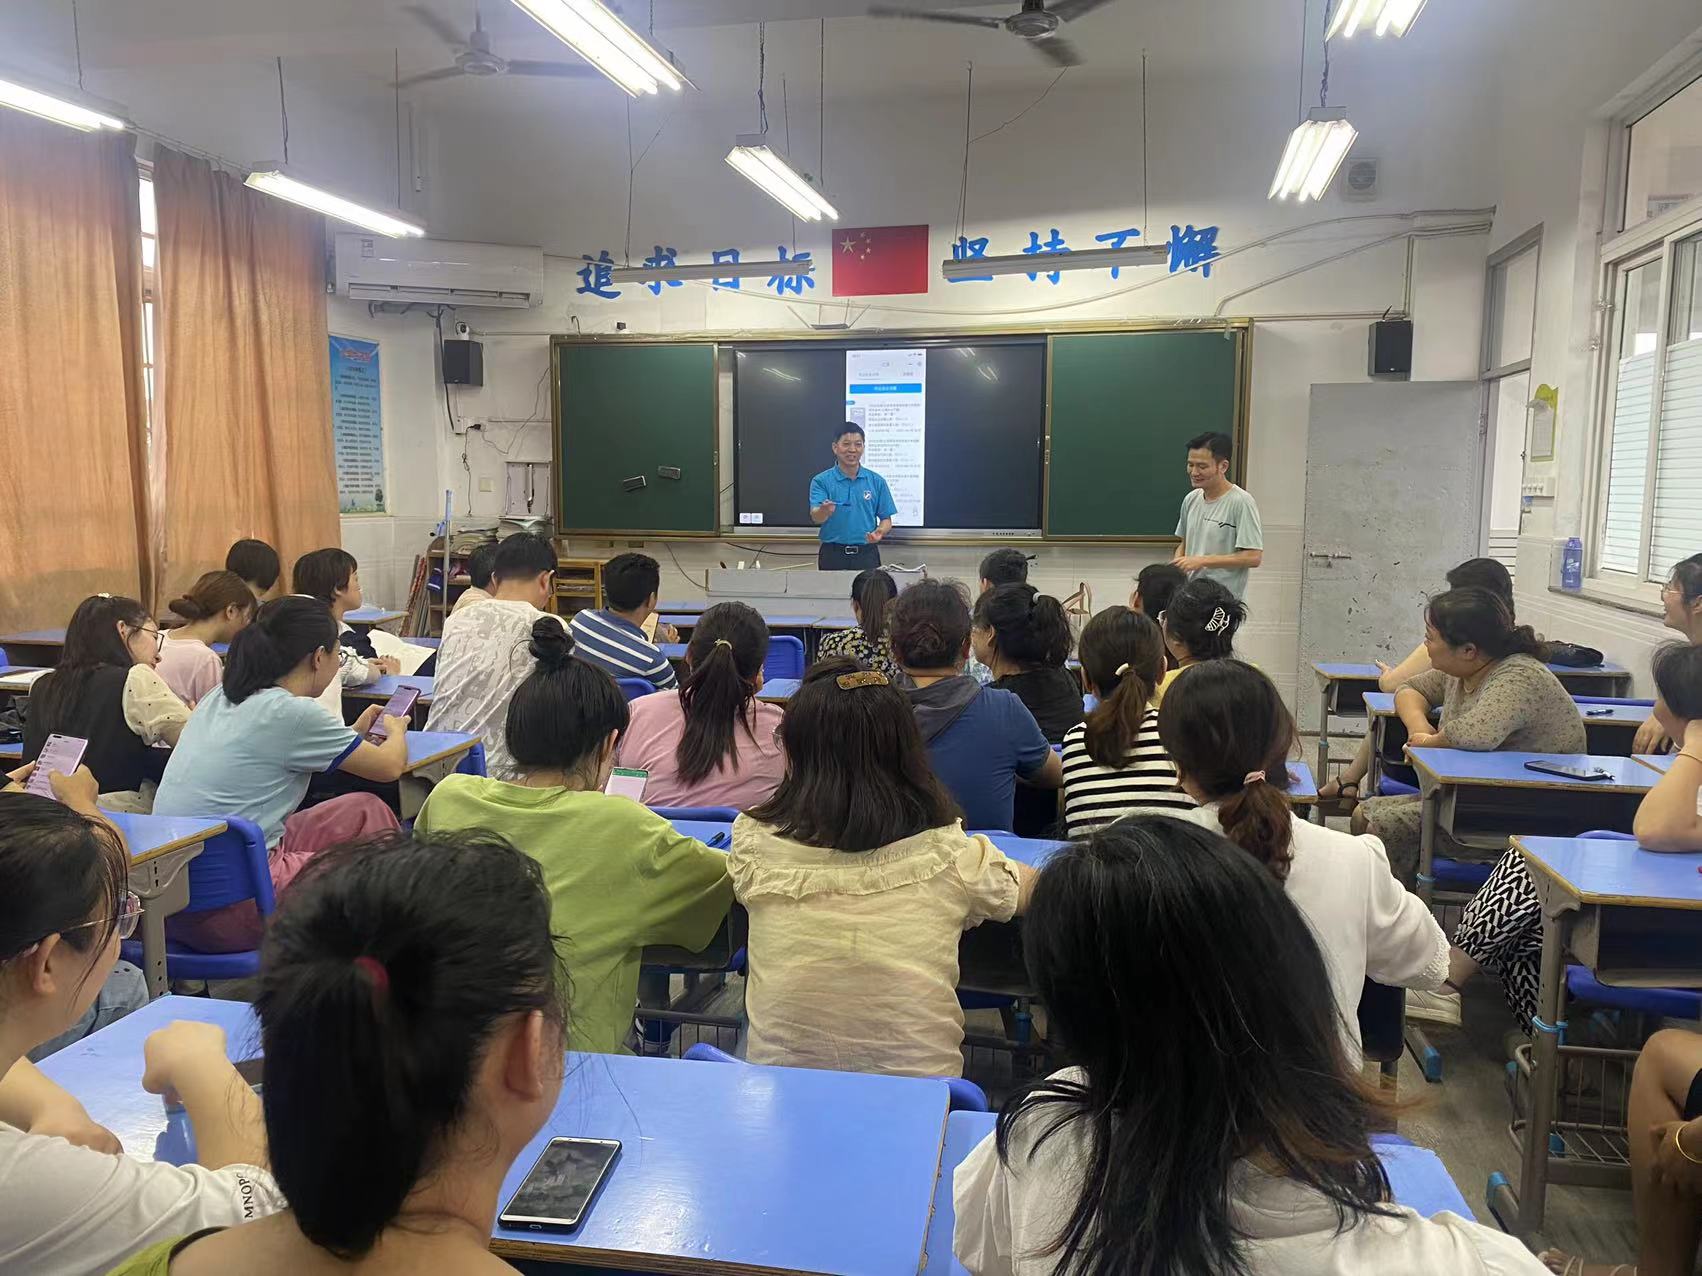 昌河实验小学举行“智慧作业”智能笔使用专项培训